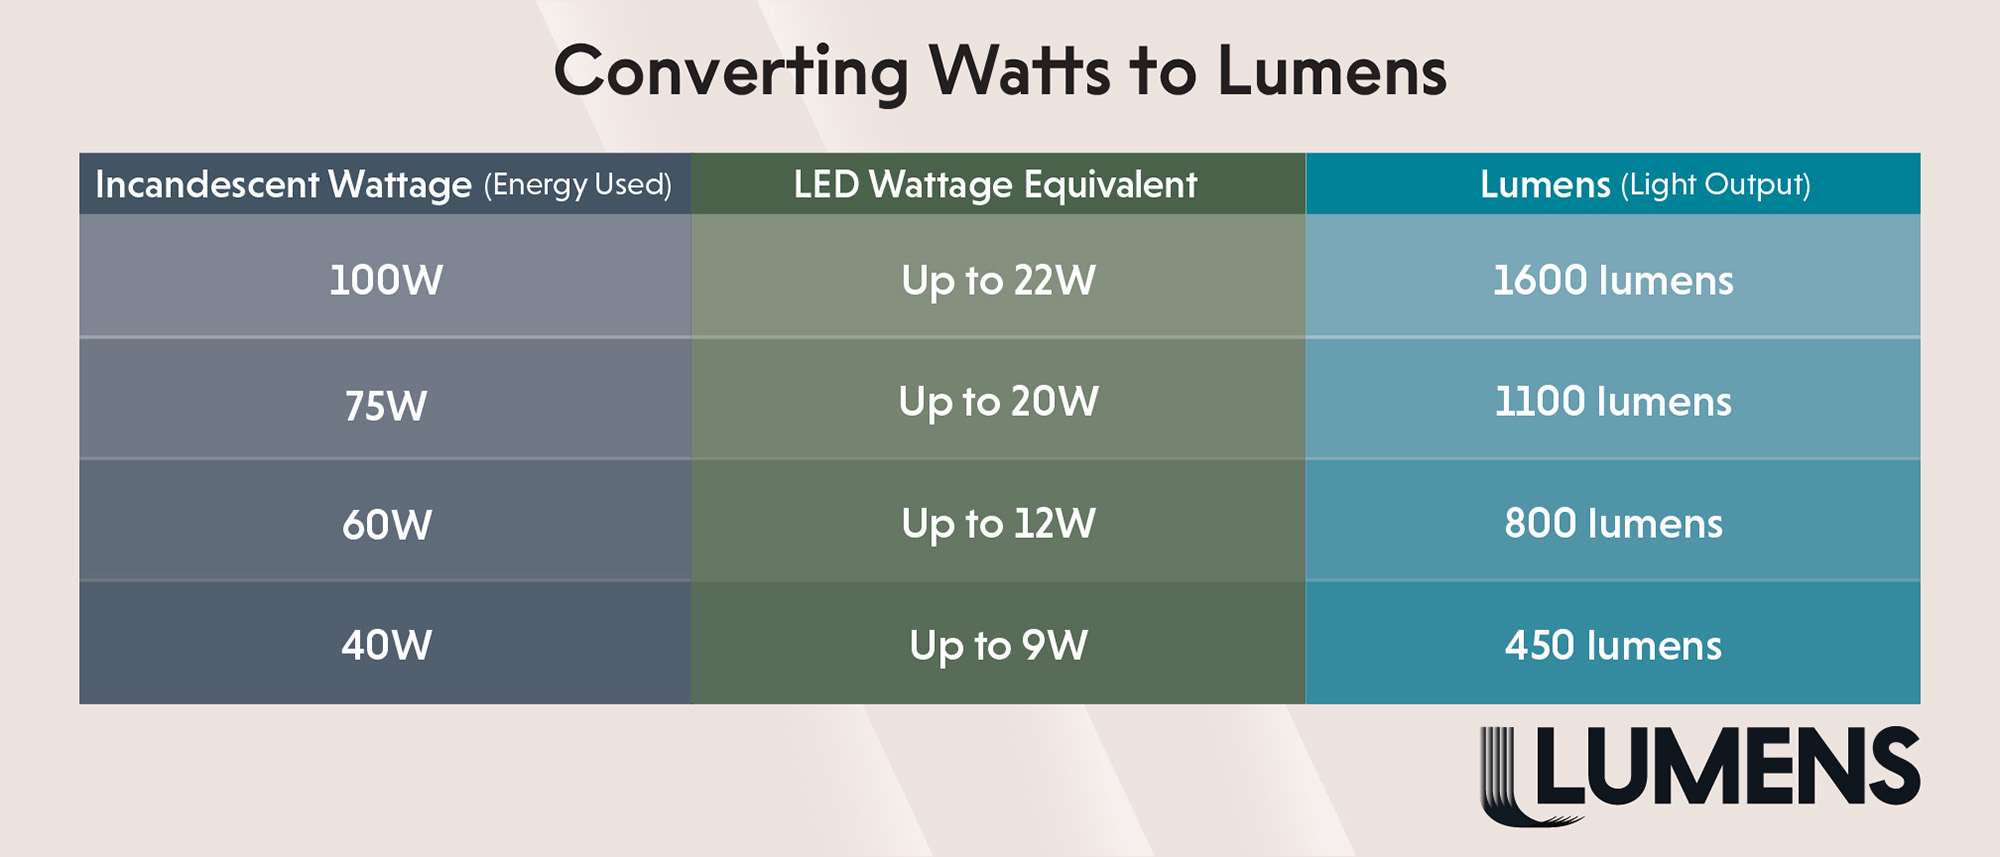 Converting Watts to Lumens